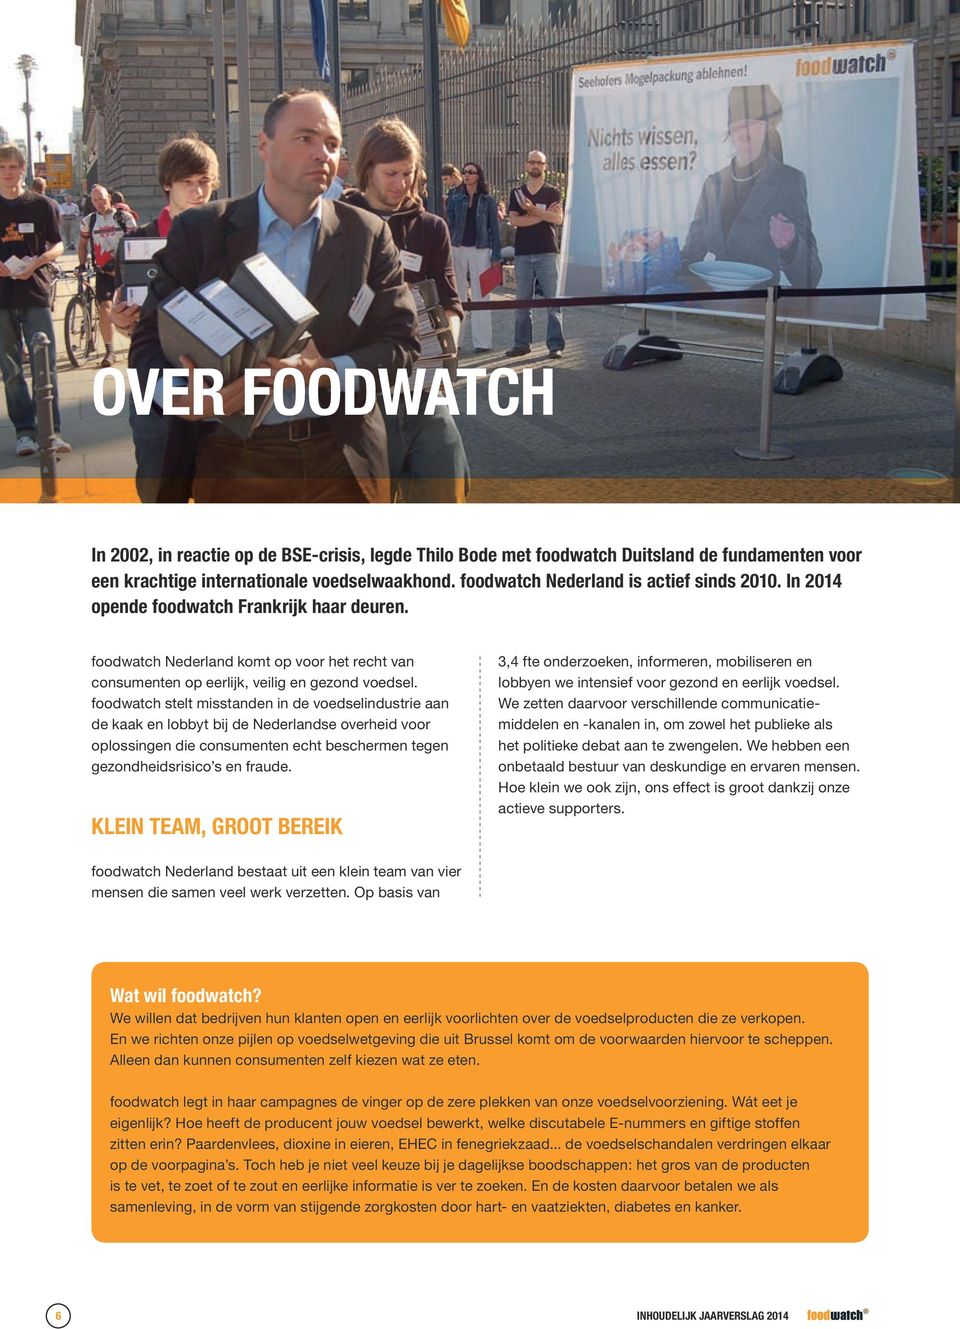 foodwatch stelt misstanden in de voedselindustrie aan de kaak en lobbyt bij de Nederlandse overheid voor oplossingen die consumenten echt beschermen tegen gezondheidsrisico s en fraude.